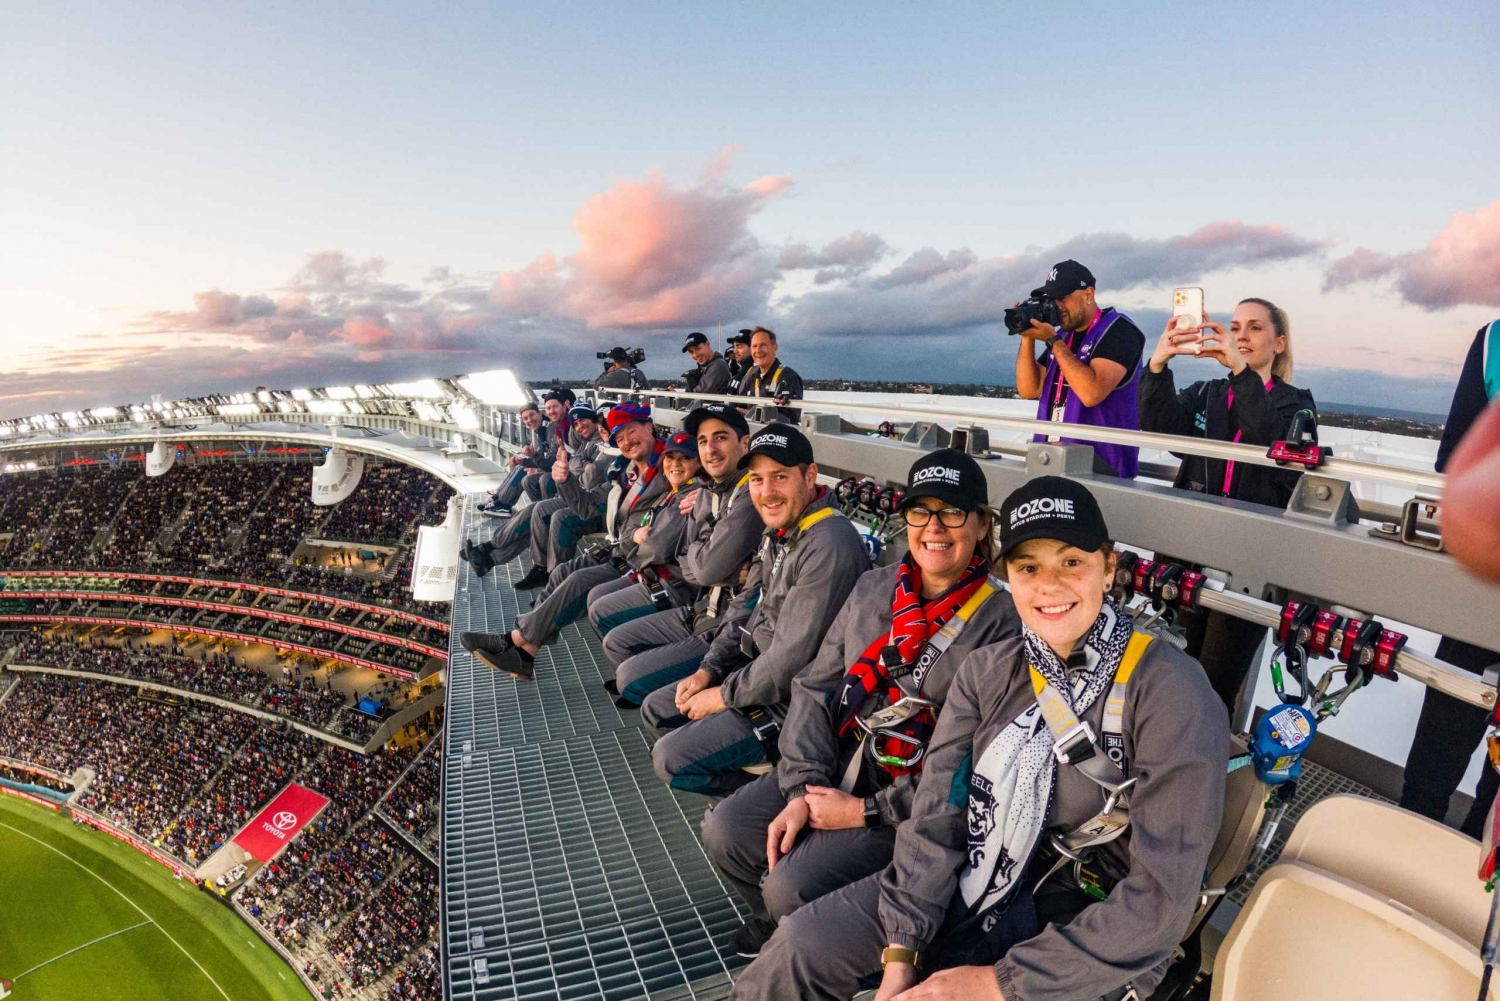 Perth: Esperienza sul tetto dell'Optus Stadium AFL Game Day